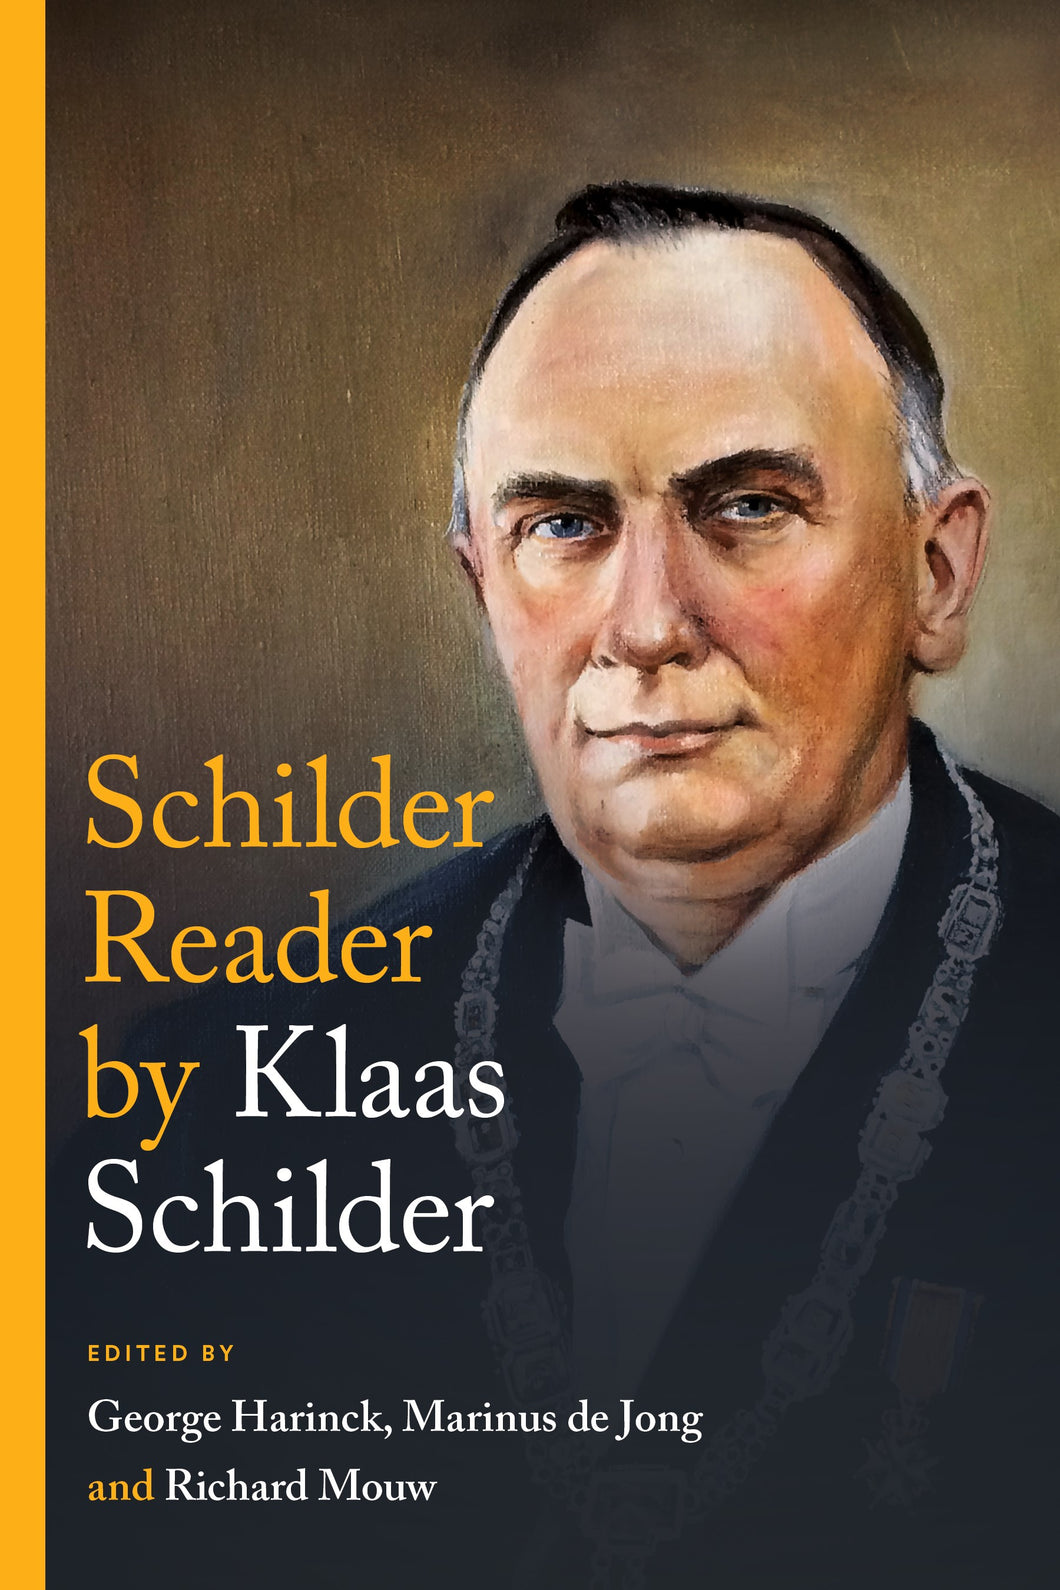 Schilder Reader